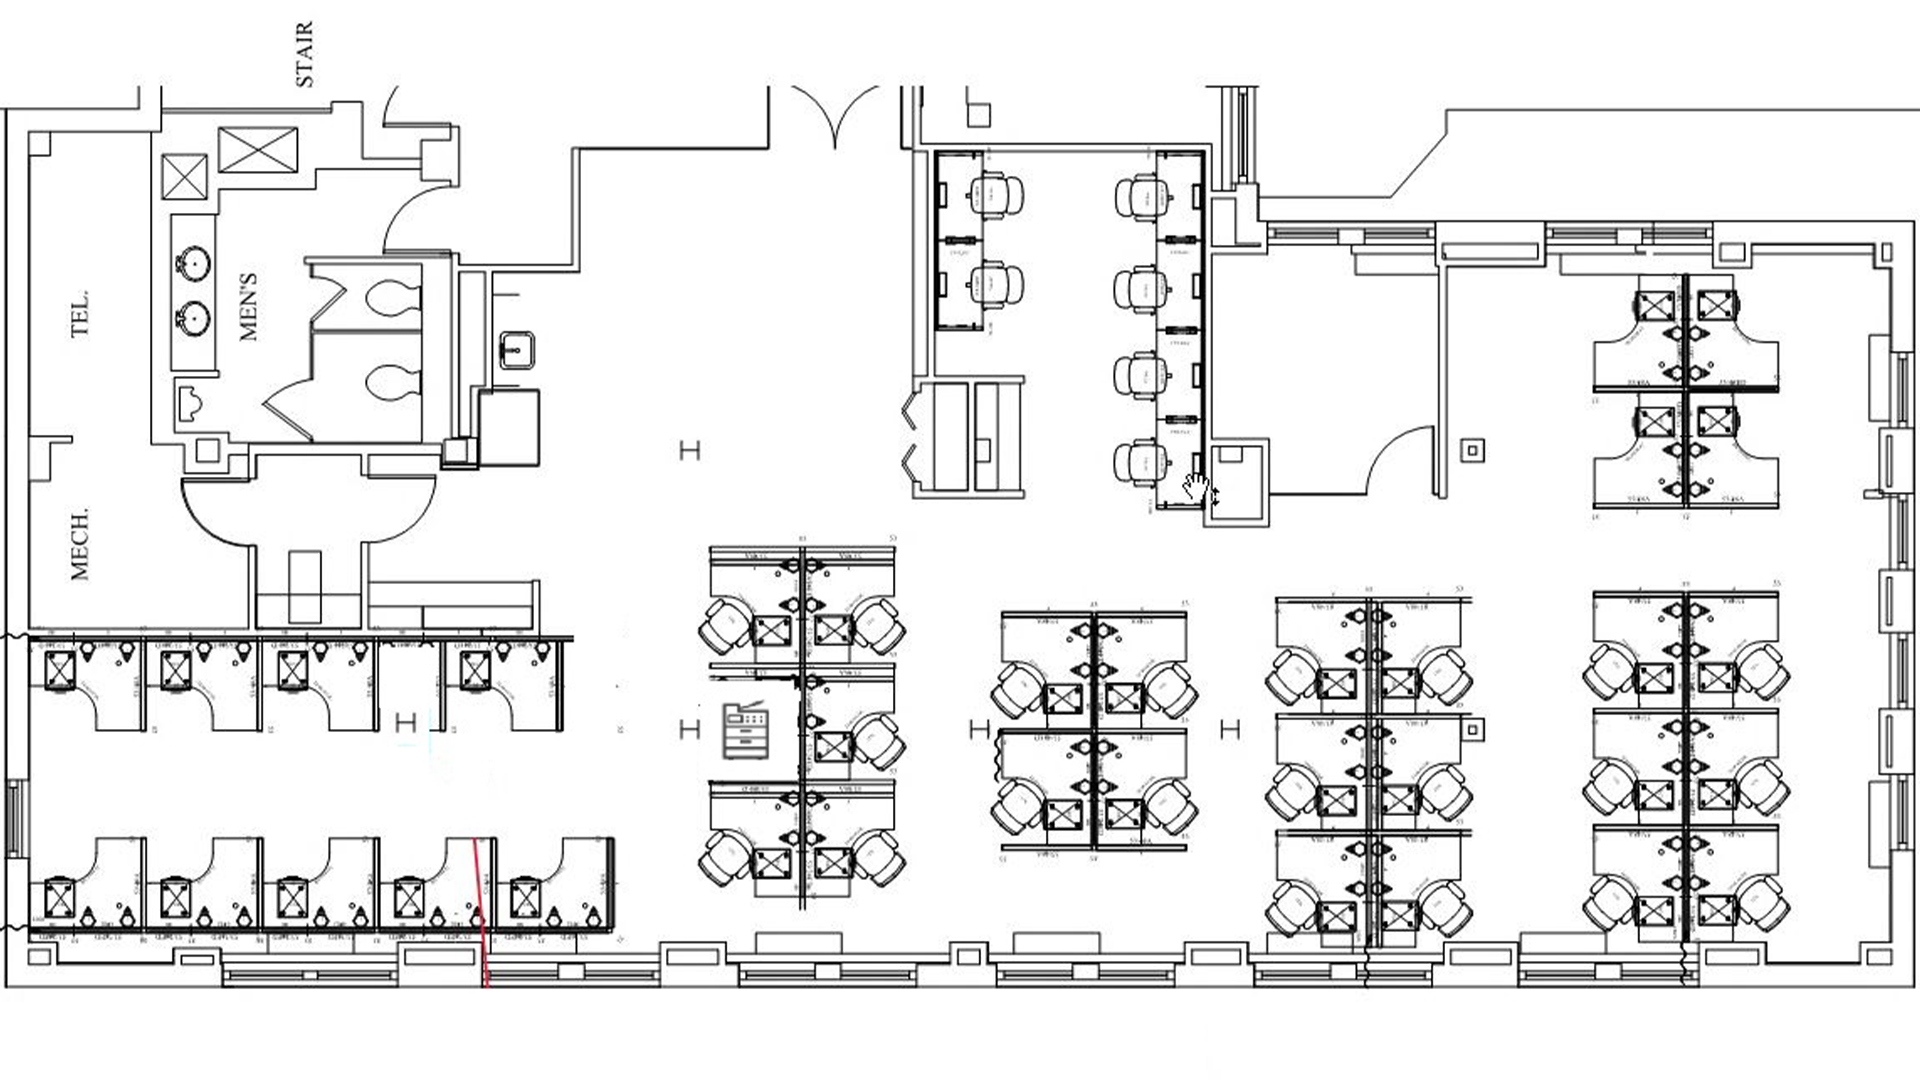 1401 K St NW floor plan